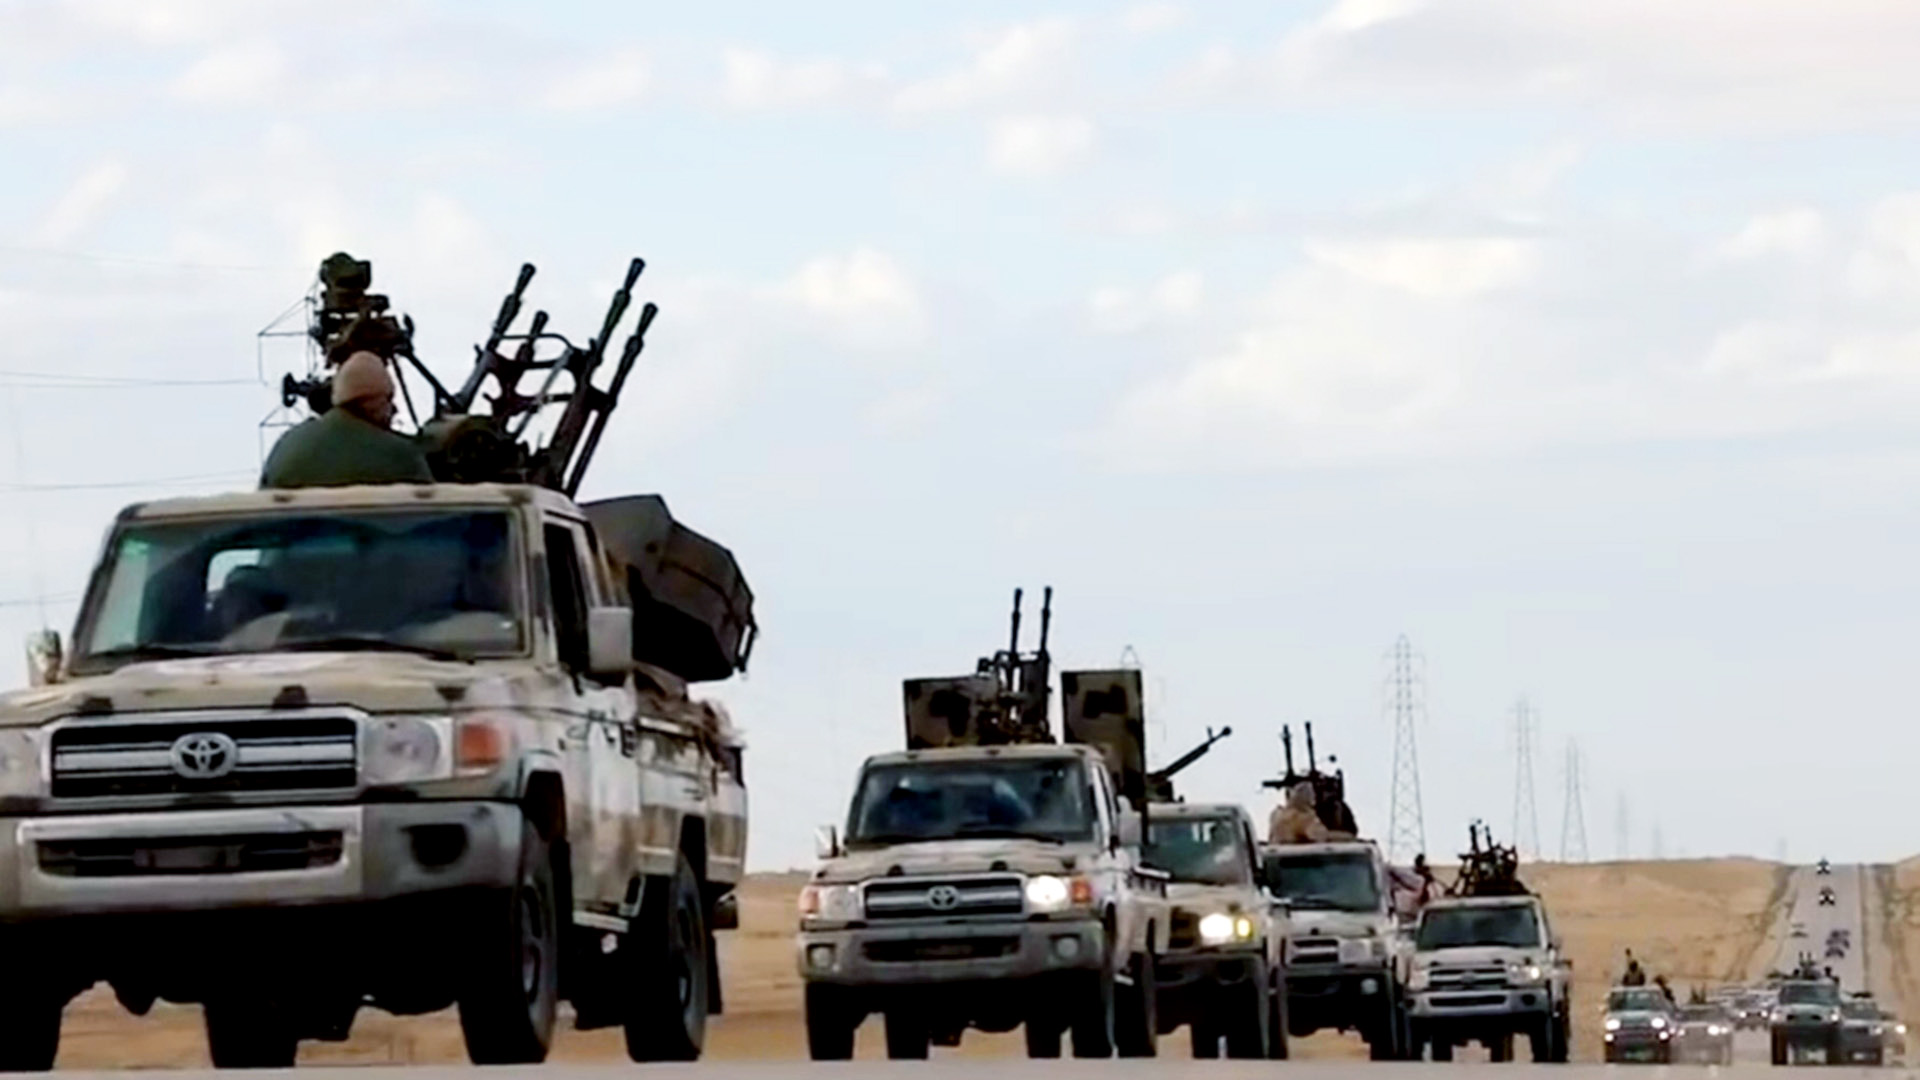 Videostill von der Libyschen Nationalen Armee soll Vormarsch auf Tripolis zeigen | AFP